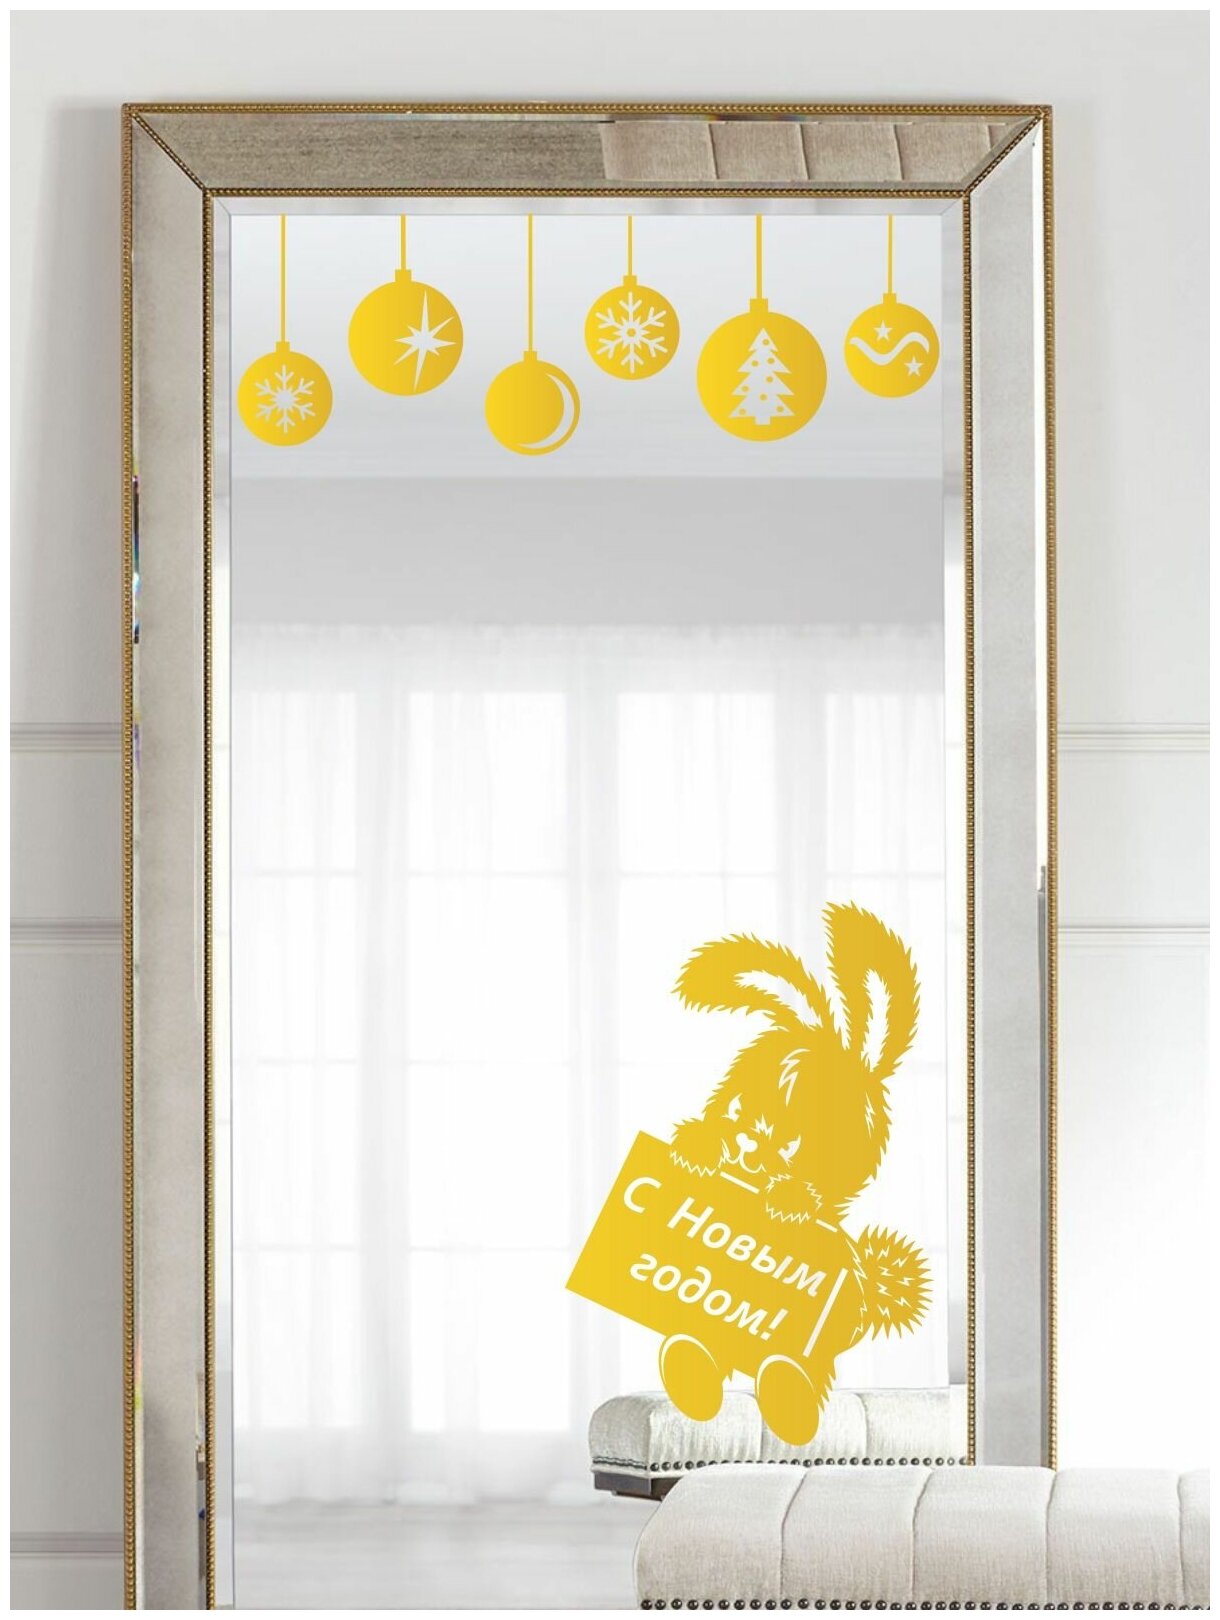 Наклейка интерьерная для дома "Кролик с елочными игрушками" золотая, на окно, на стену Новогодняя наклейка (декор, украшение)